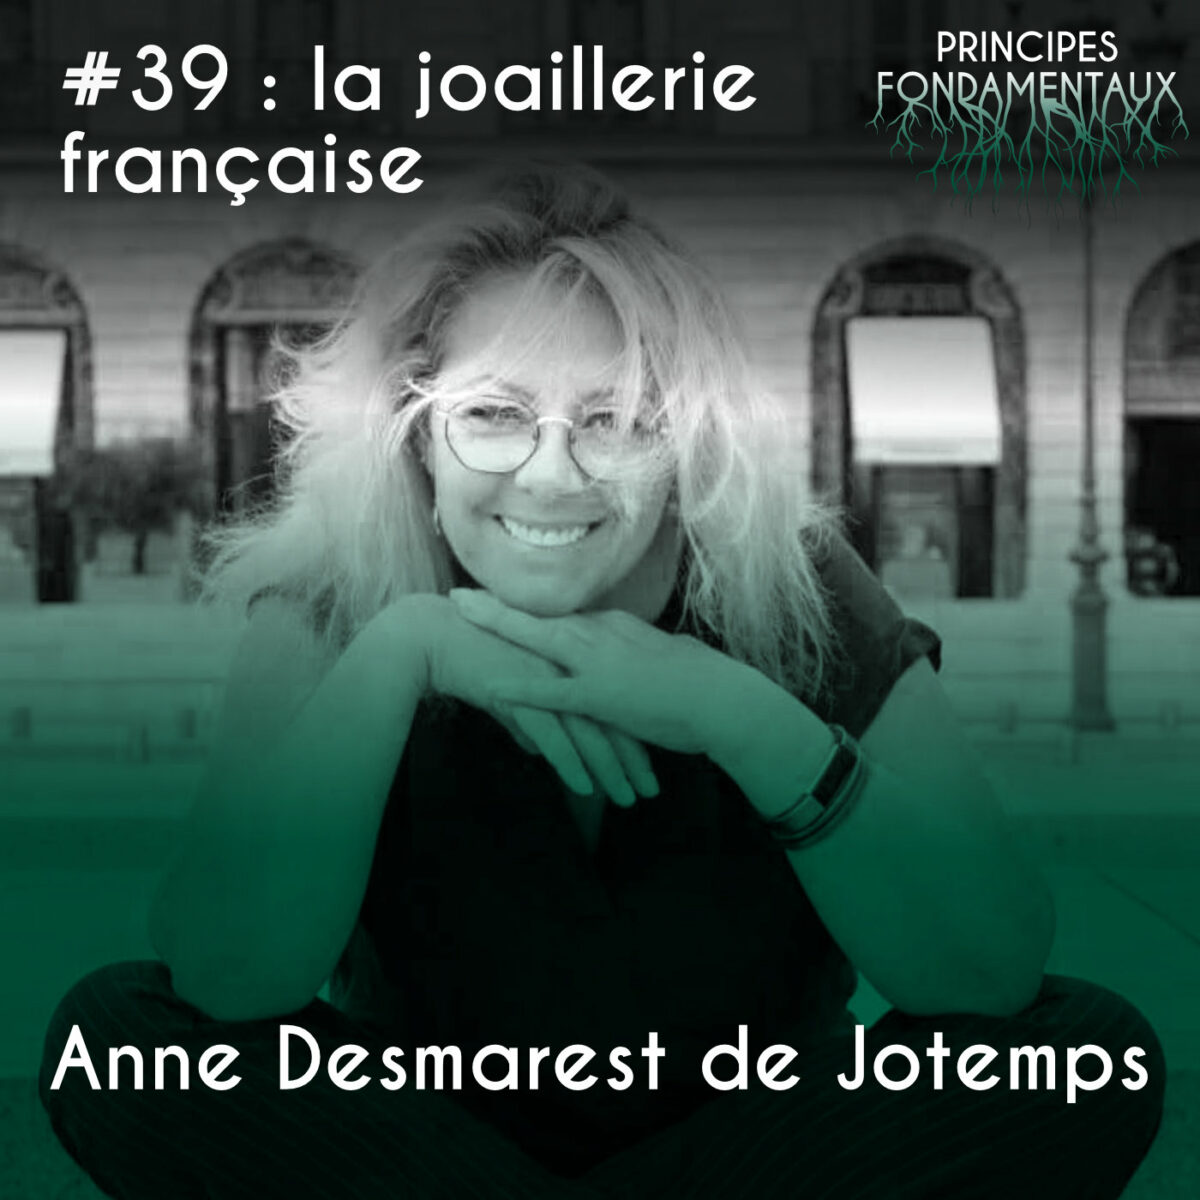 Couverture Podcast #39 : Anne Desmarest de Jotemps - la joaillerie française